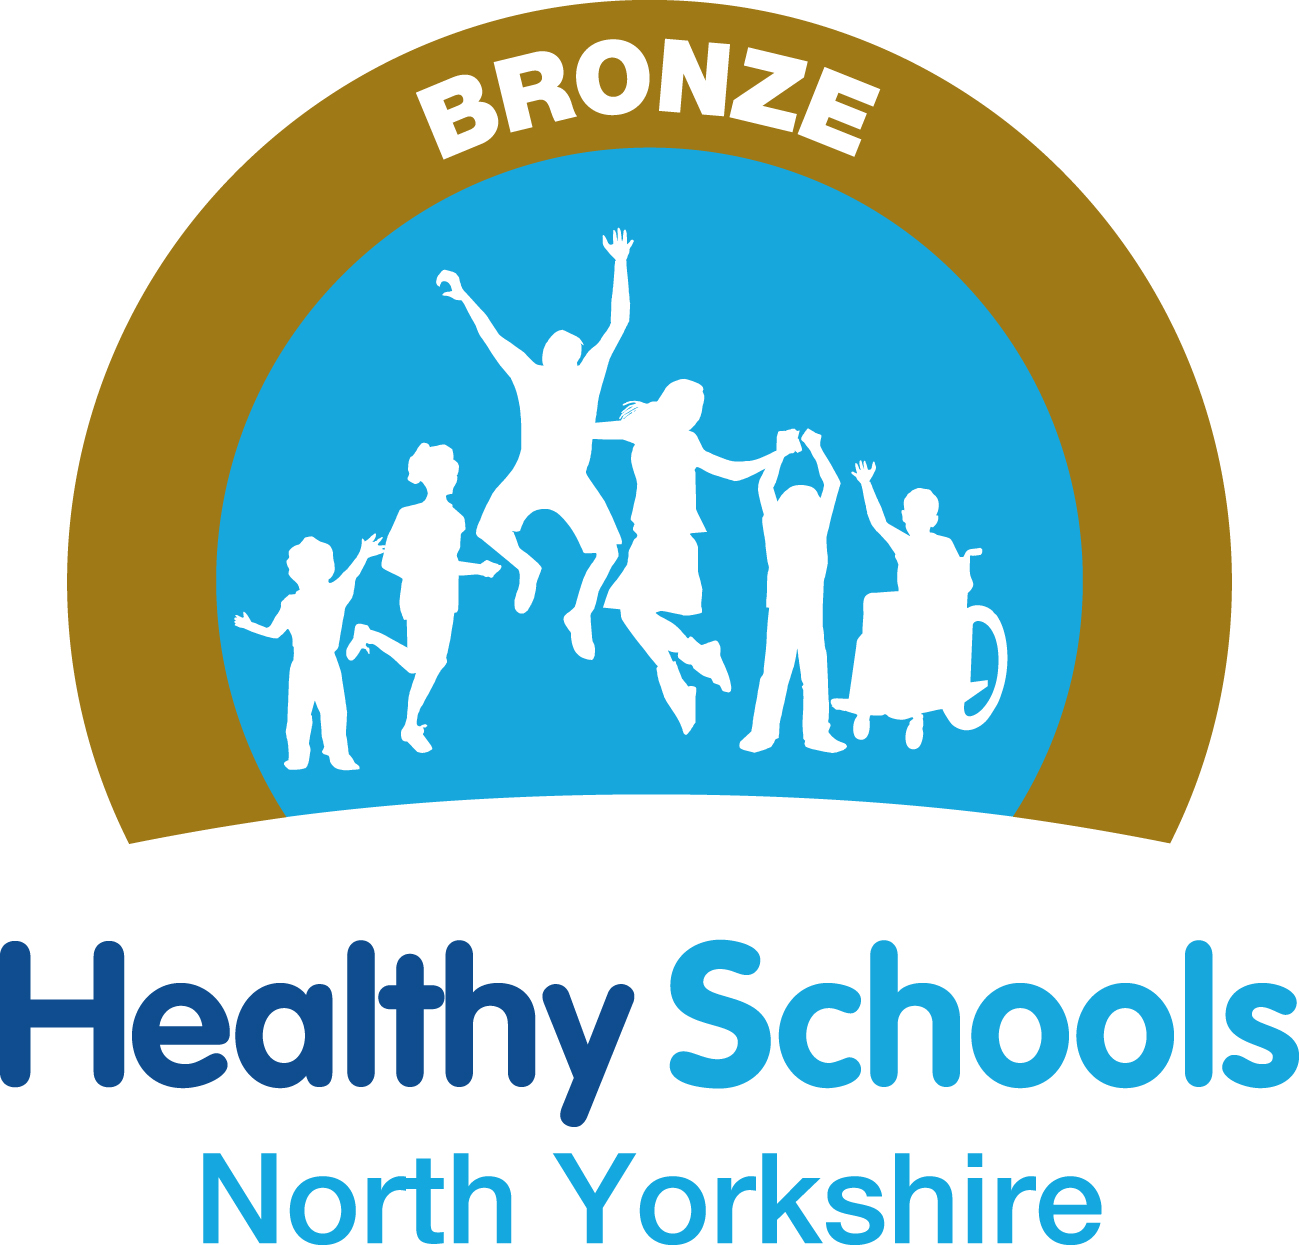 National Healthy Schools Award - Bronze